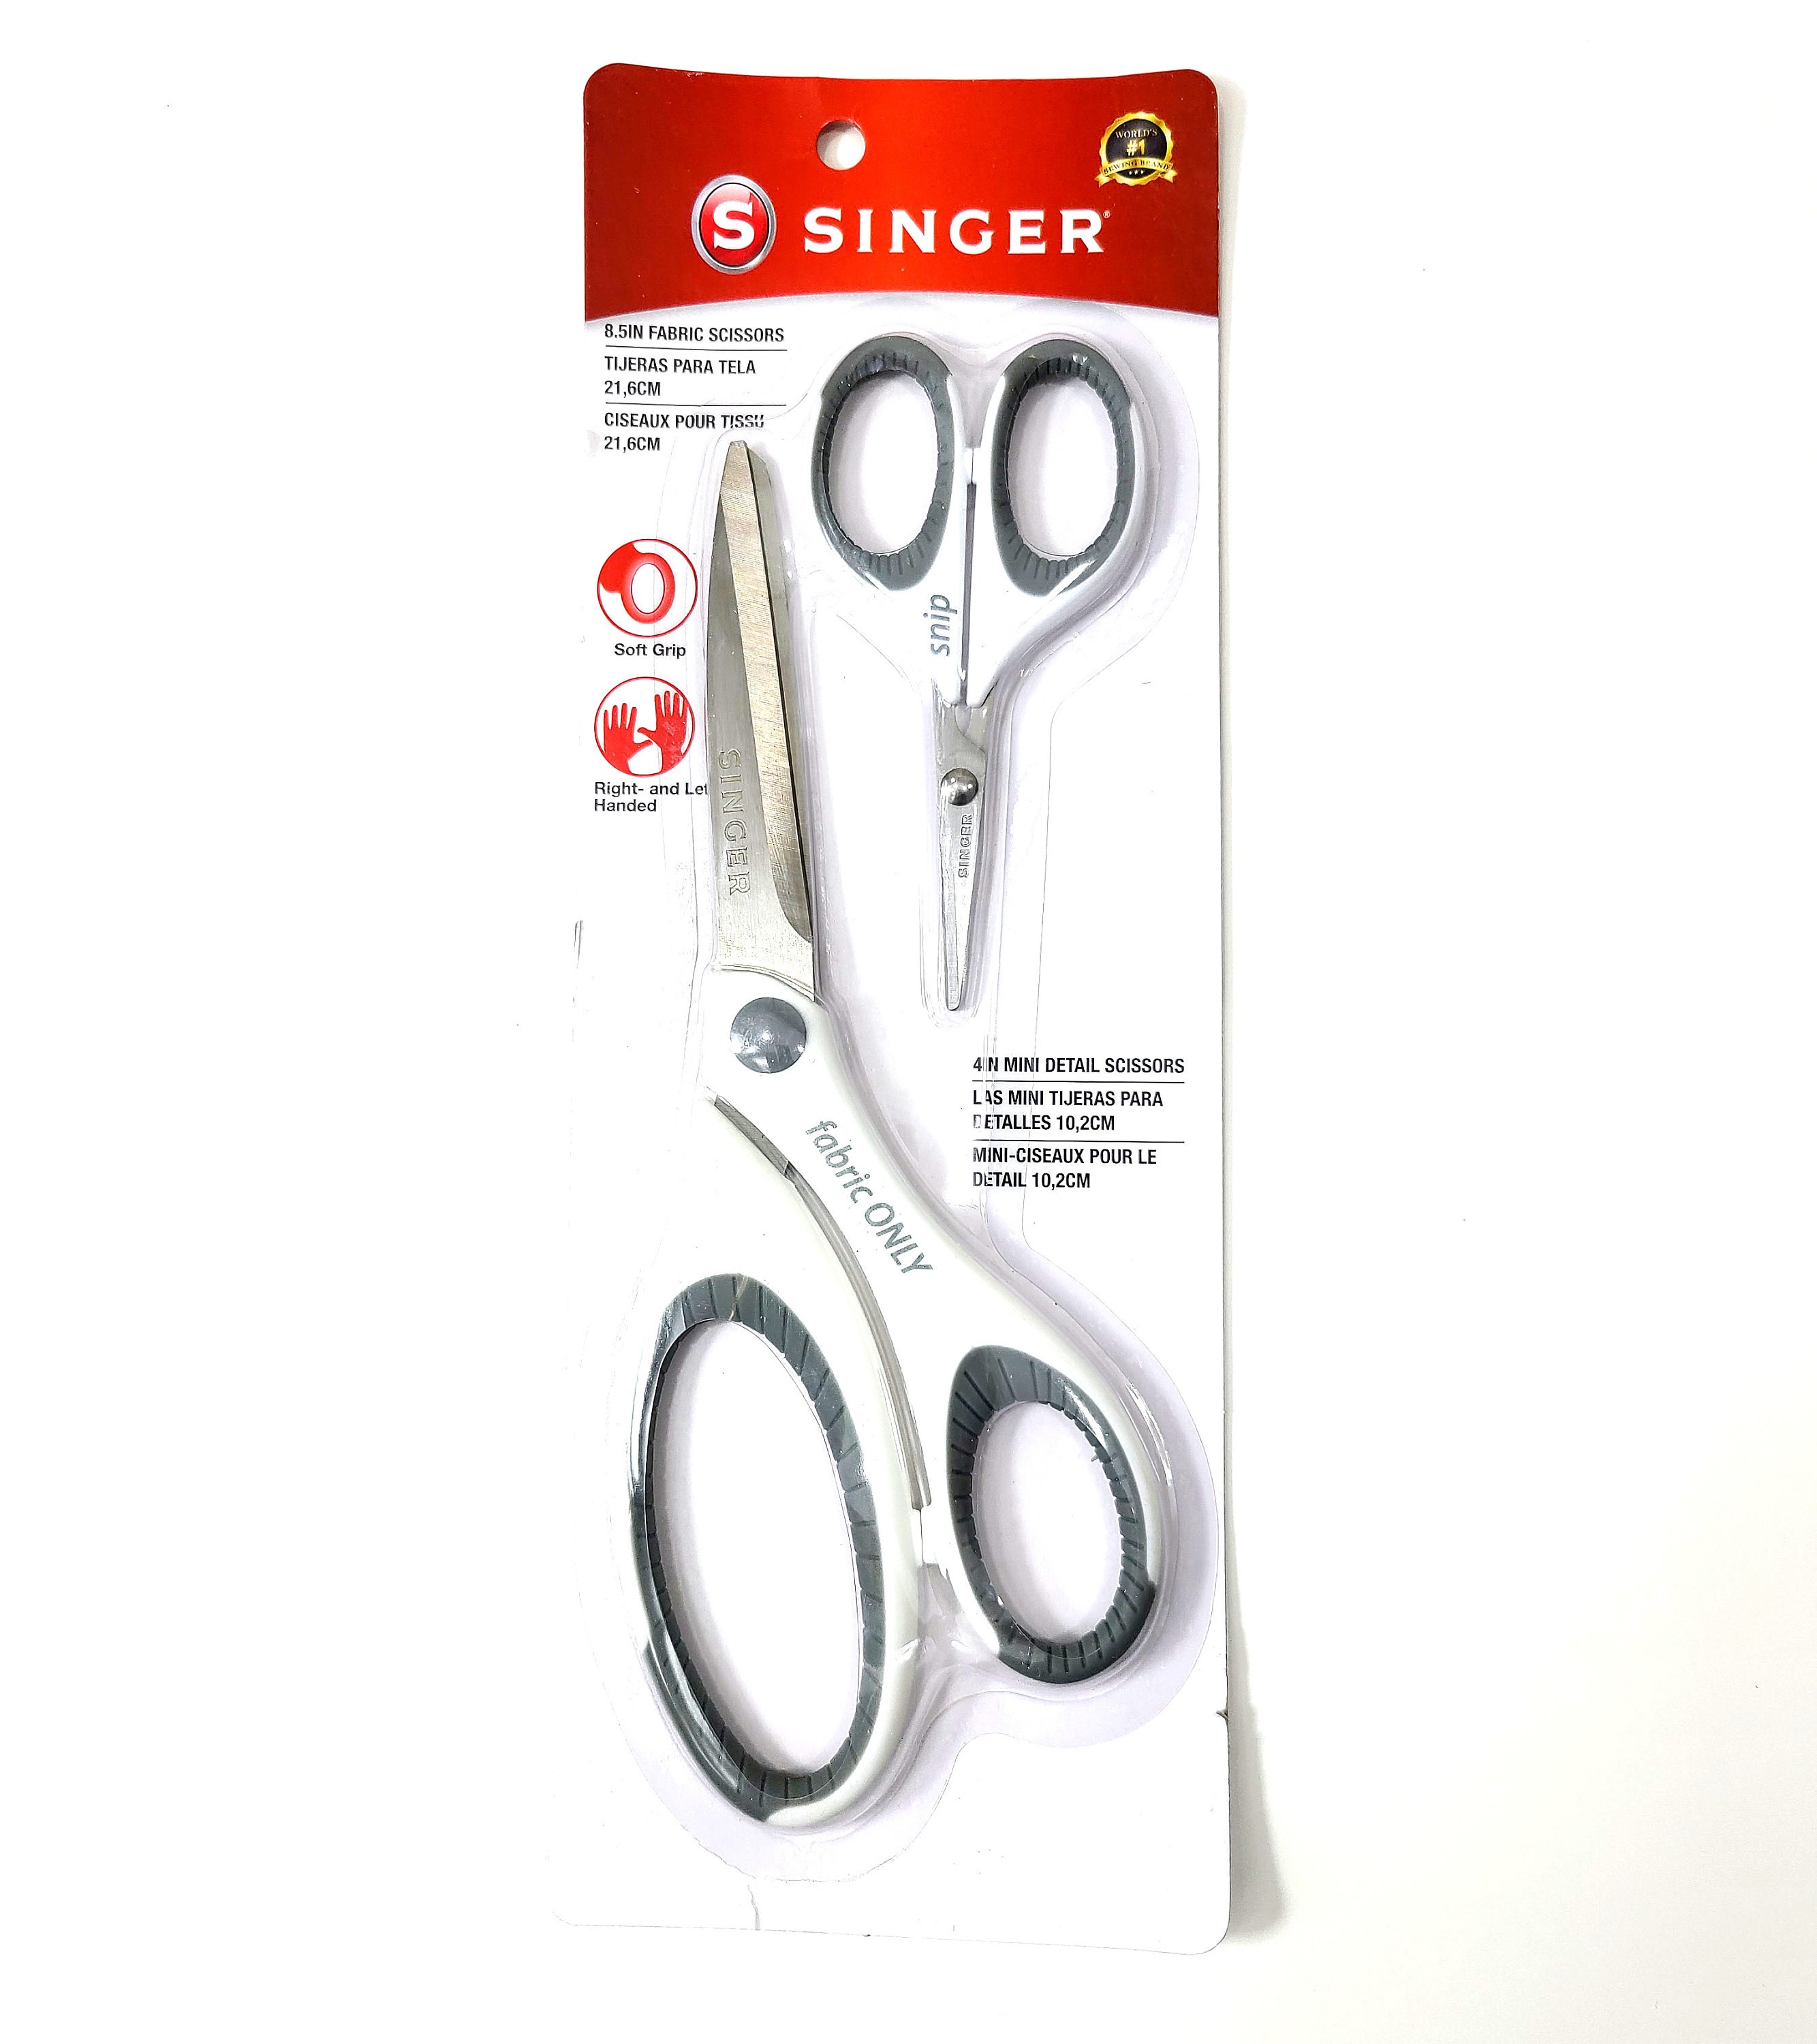 Singer 8.5in Fabric Scissors